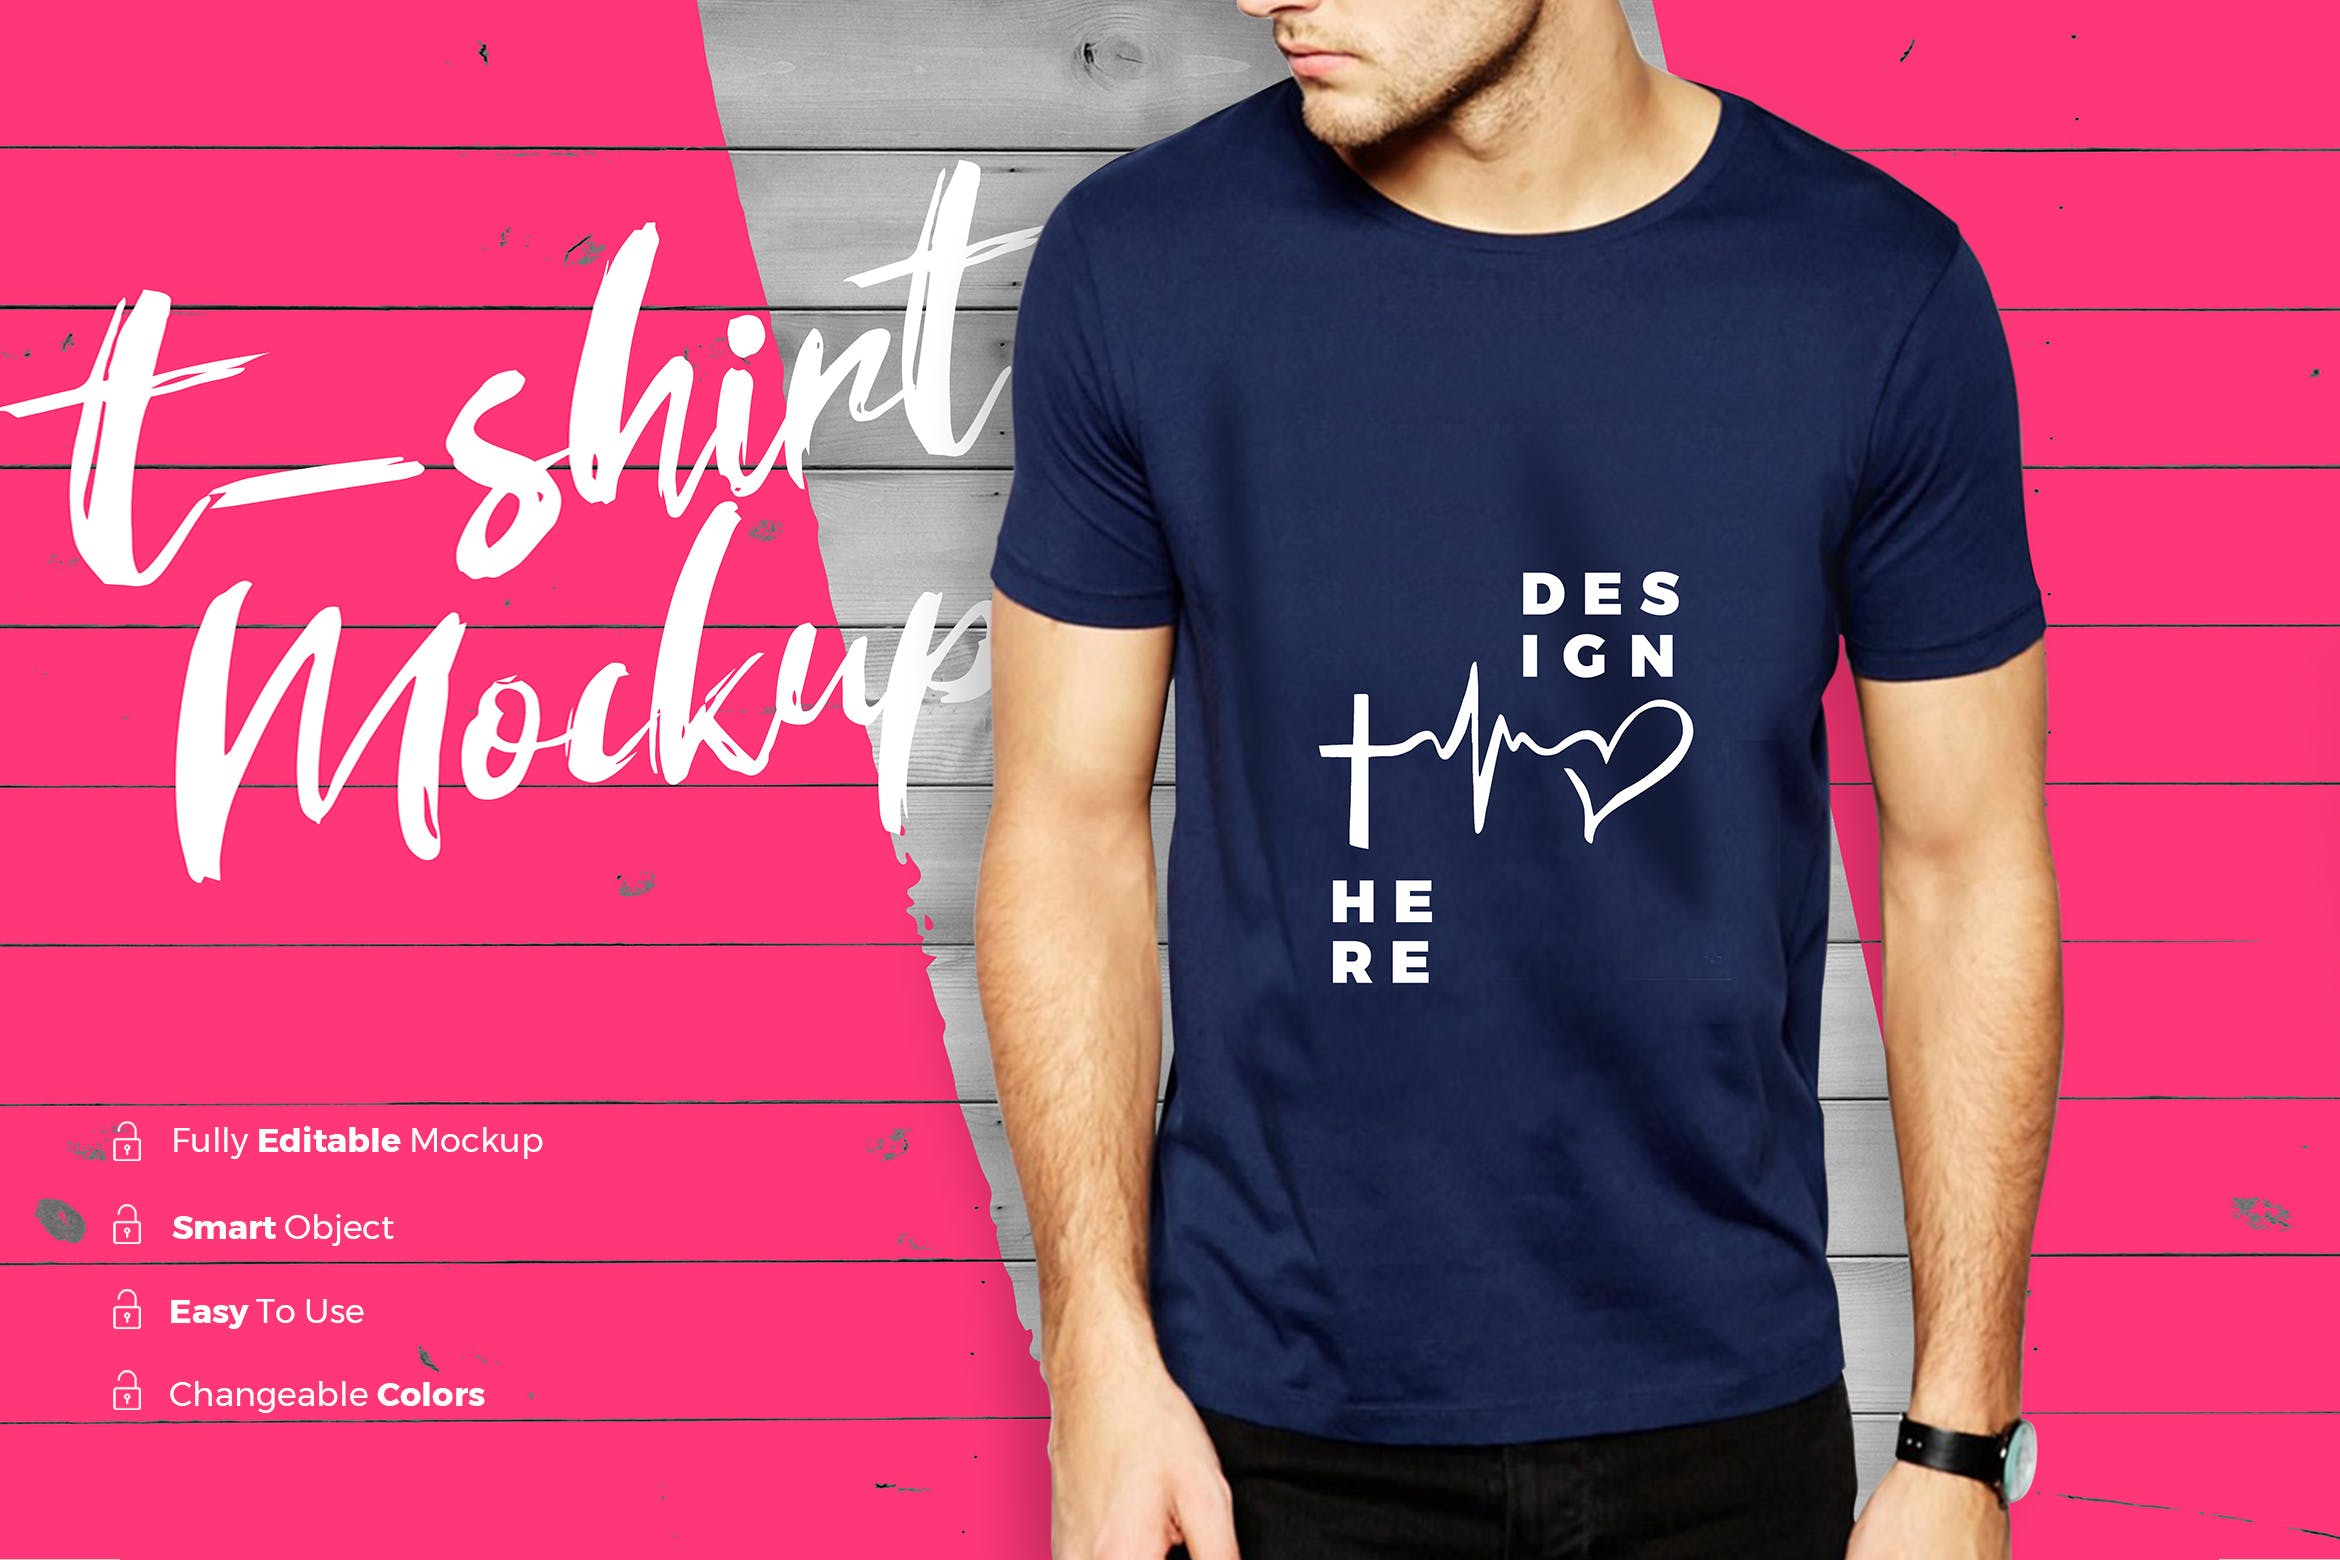 男士潮流时尚T恤印花图案设计展示样机素材中国精选 TShirt Mockup插图